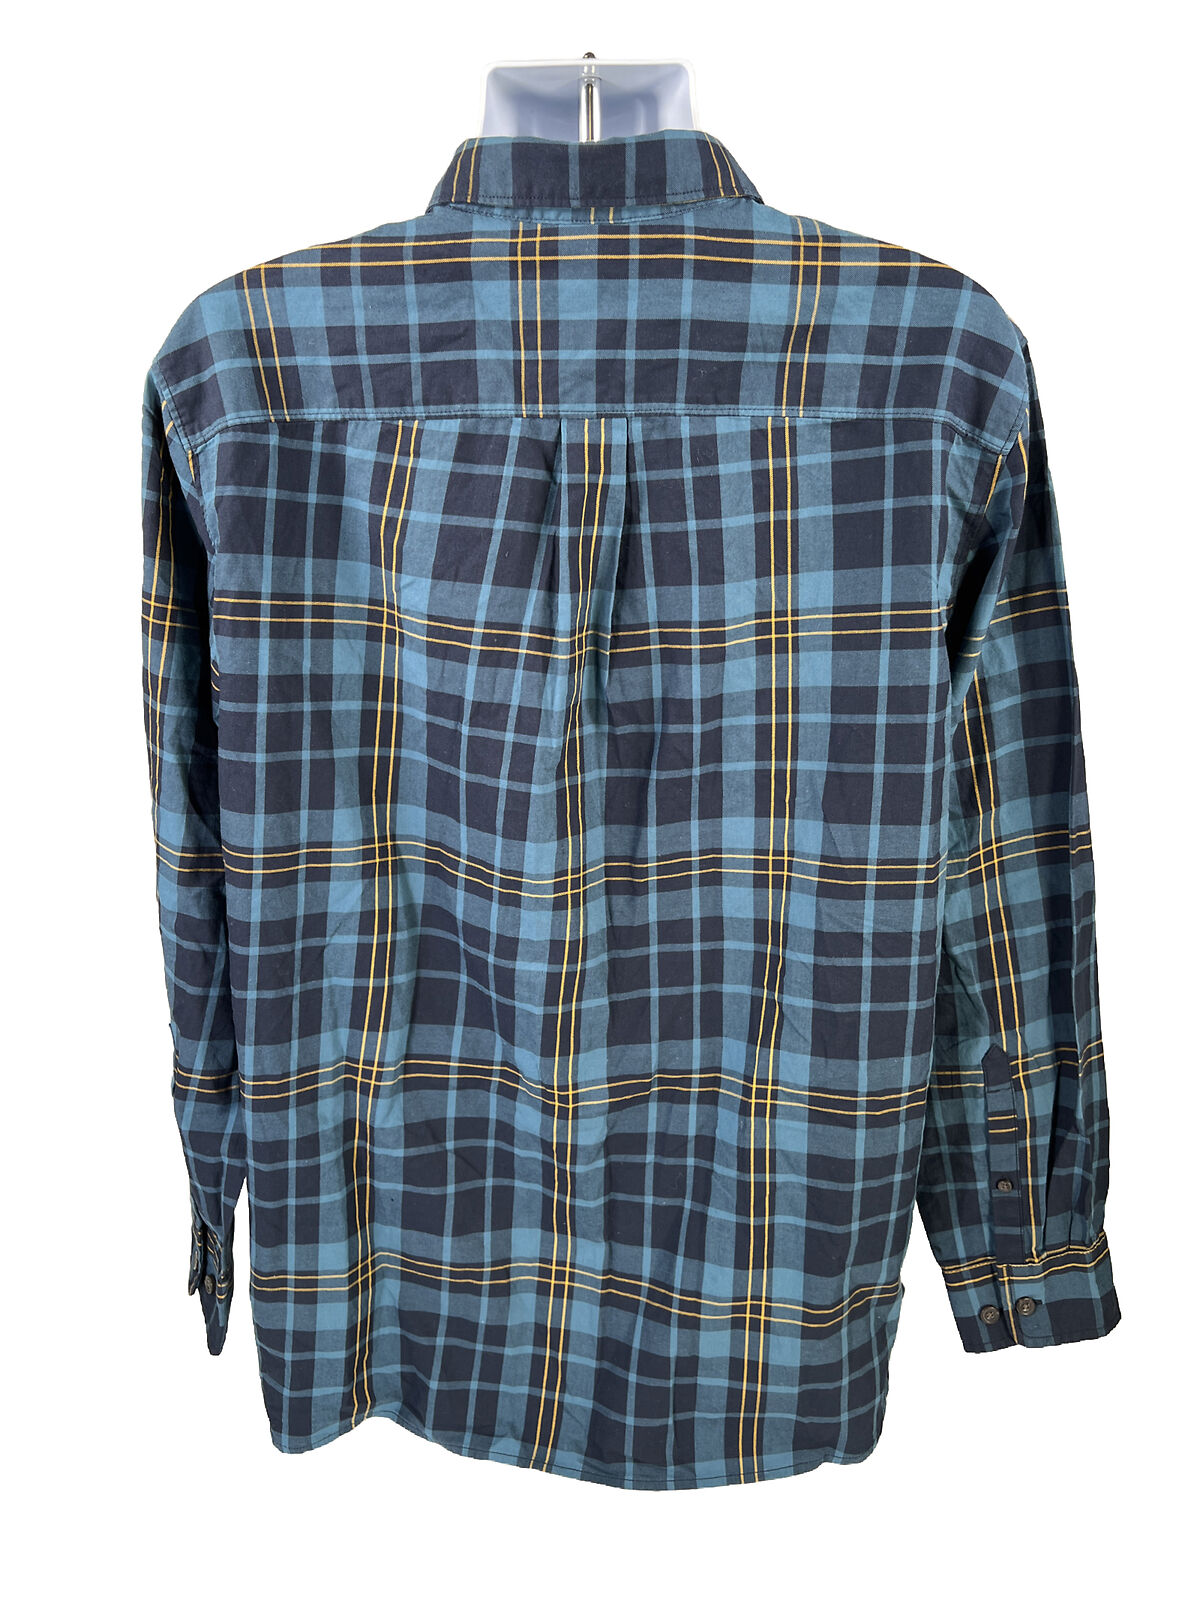 The North Face Men's Blue Plaid Button Up Shirt - XL